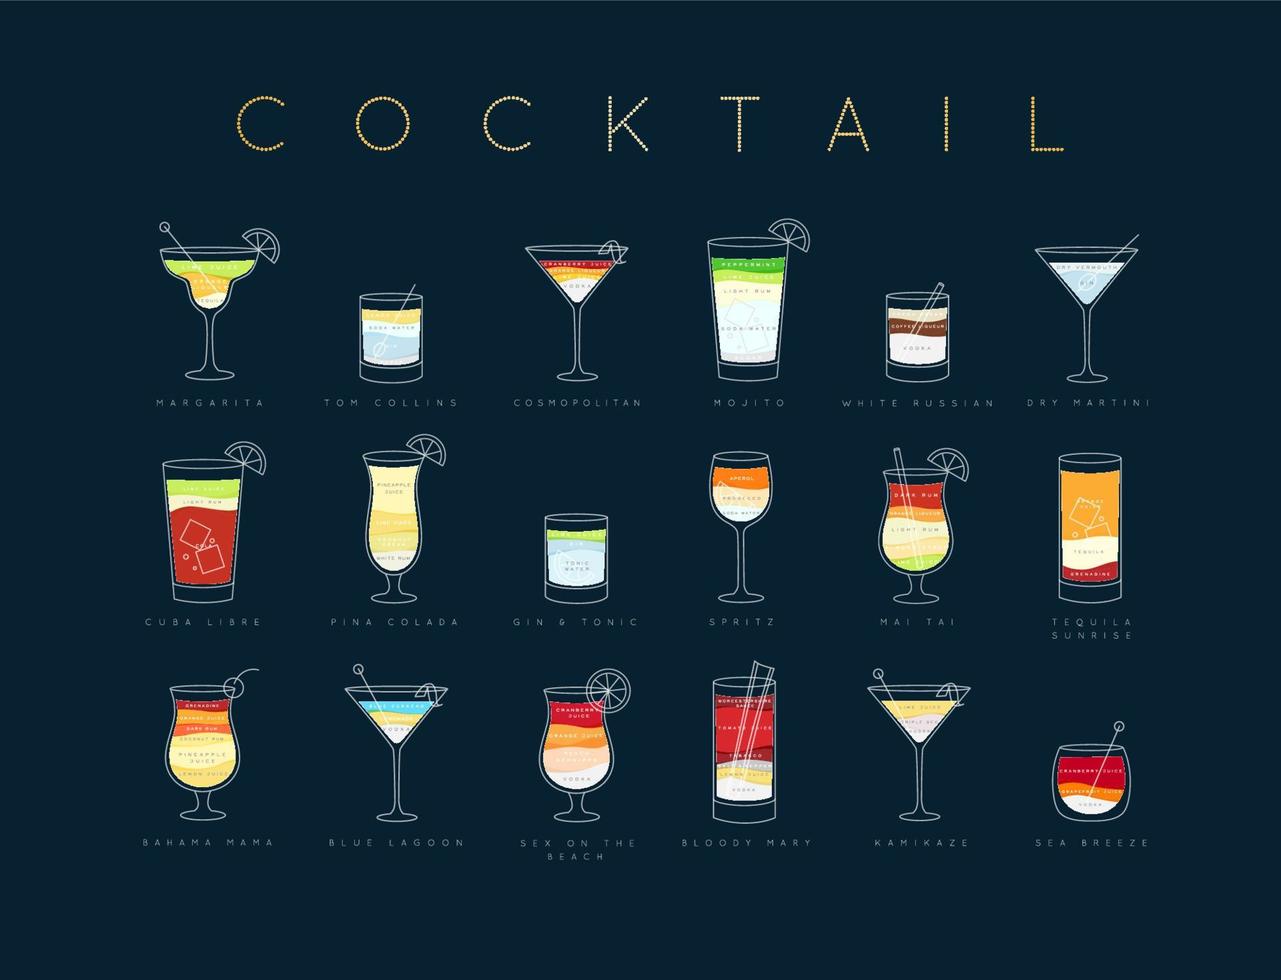 posterflache cocktailkarte mit glas, rezepten und namen von cocktailgetränken, die horizontal auf dunkelblauem hintergrund zeichnen vektor